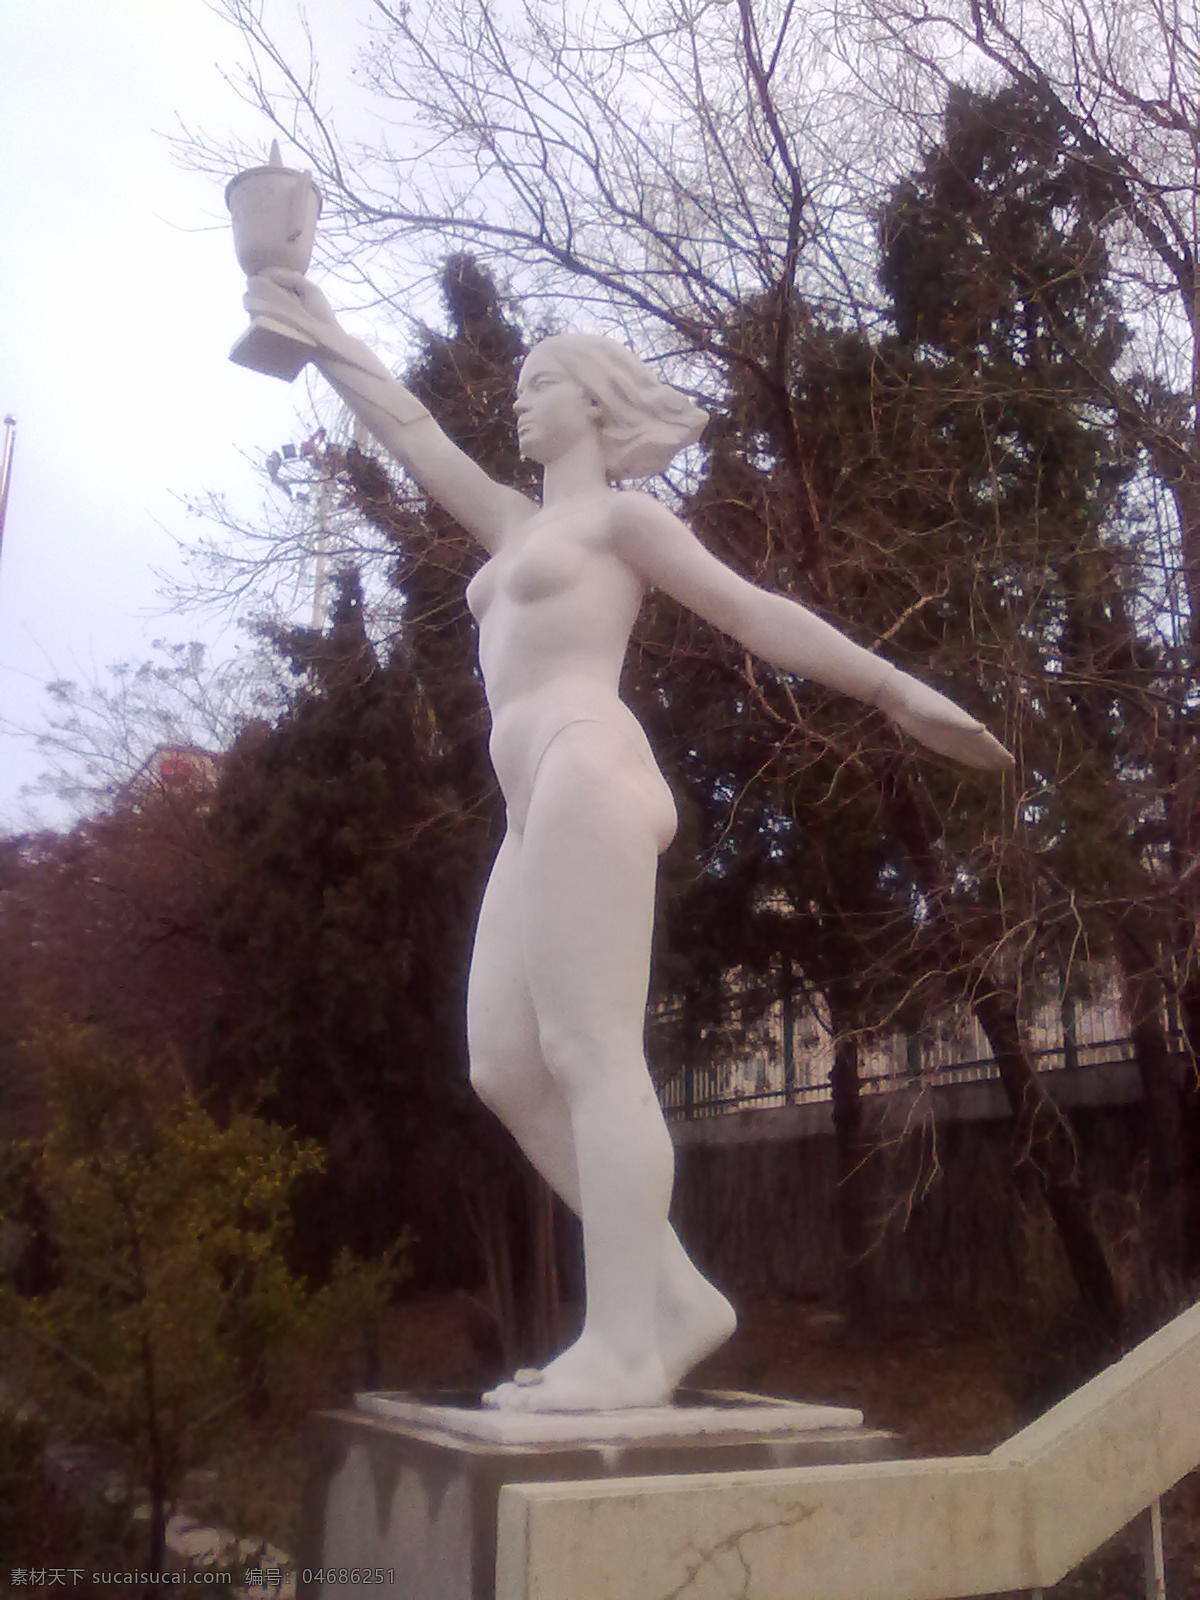 女士 雕塑 手 举 奖杯 女生 体育馆门口 松树 建筑园林